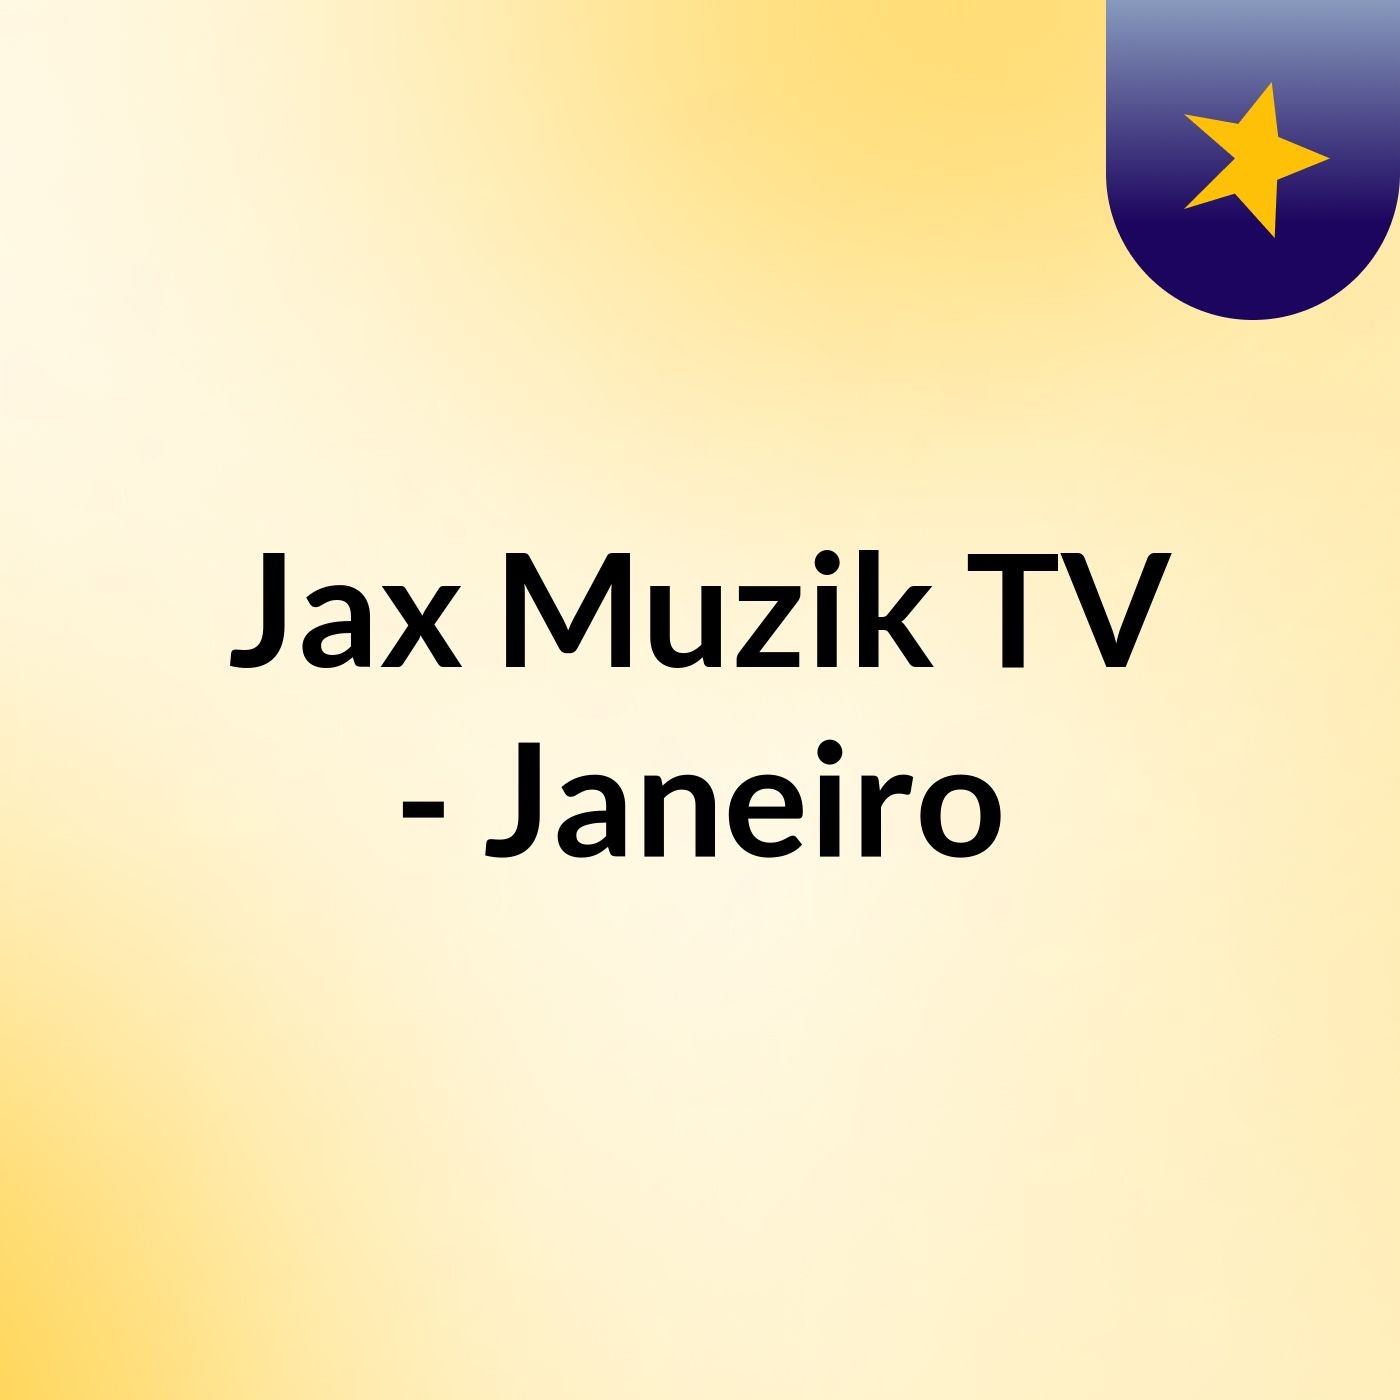 Jax Muzik TV - Janeiro